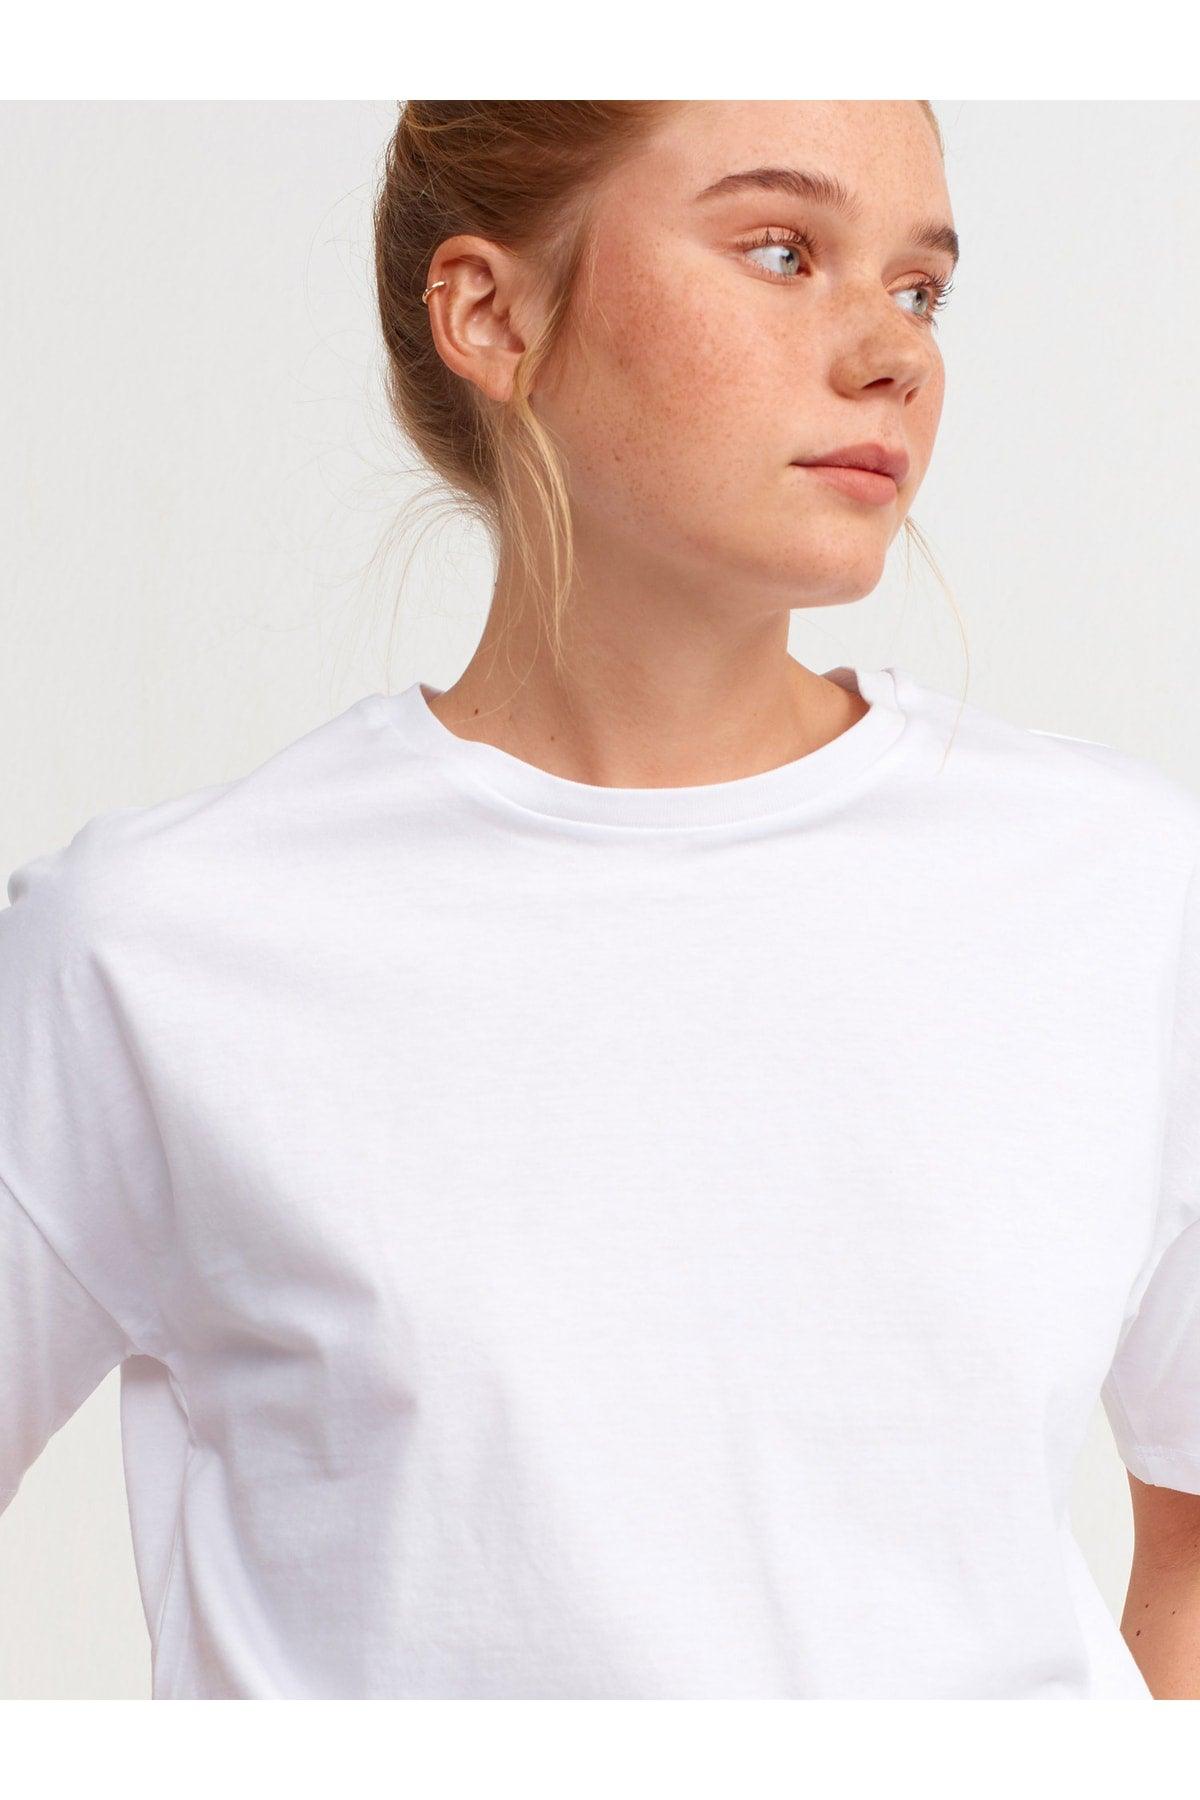 Women's White Basic T-shirt 3683 - Swordslife